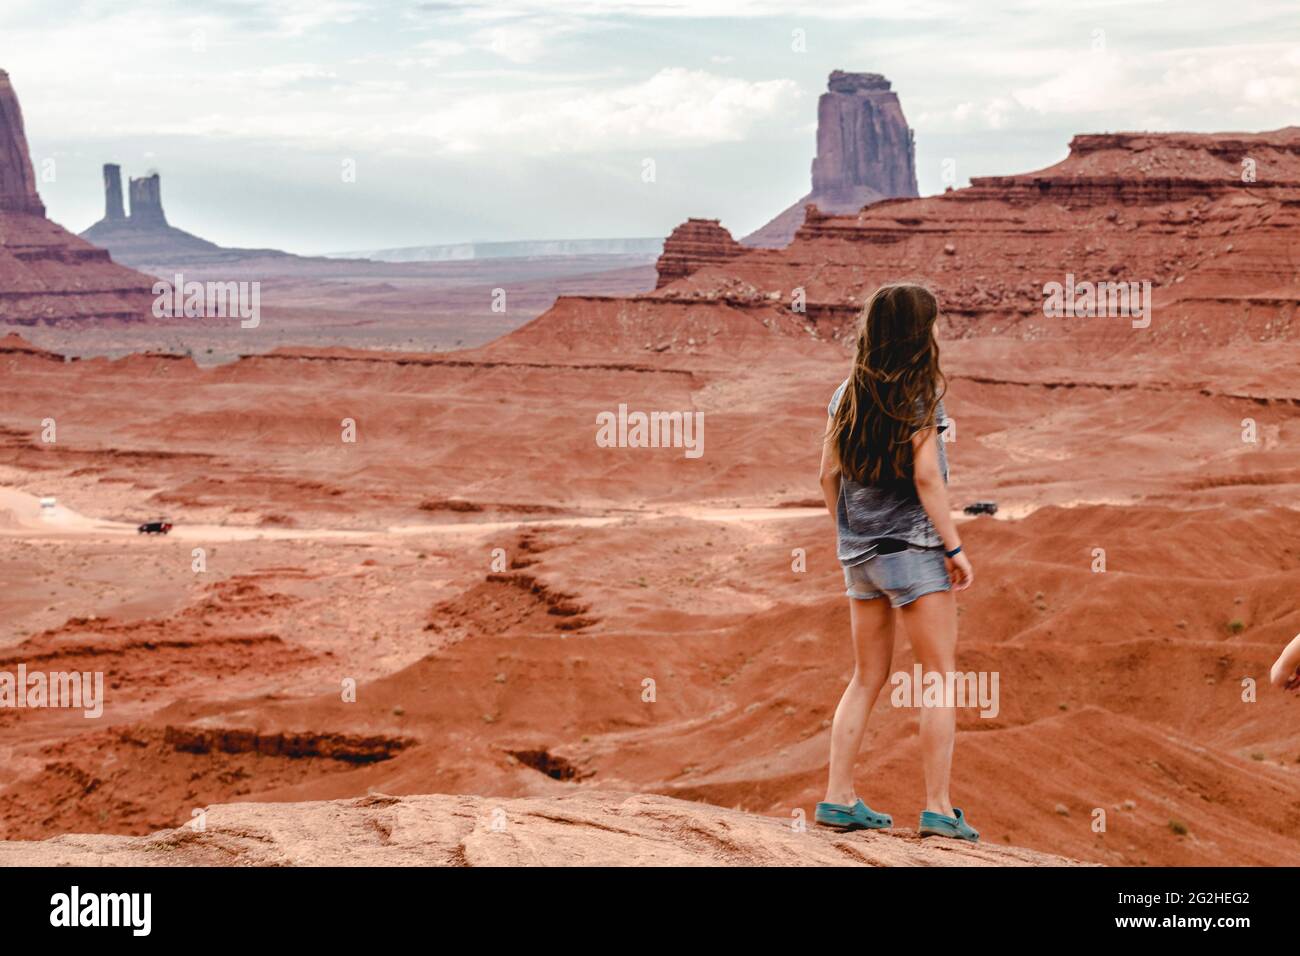 John Ford Point - ein Aussichtspunkt mit atemberaubenden Ausblicken auf zerklüftete Buten, benannt nach dem Regisseur, der hier im Monument Valley, Arizona, USA, mehrere Filme zeigt Stockfoto